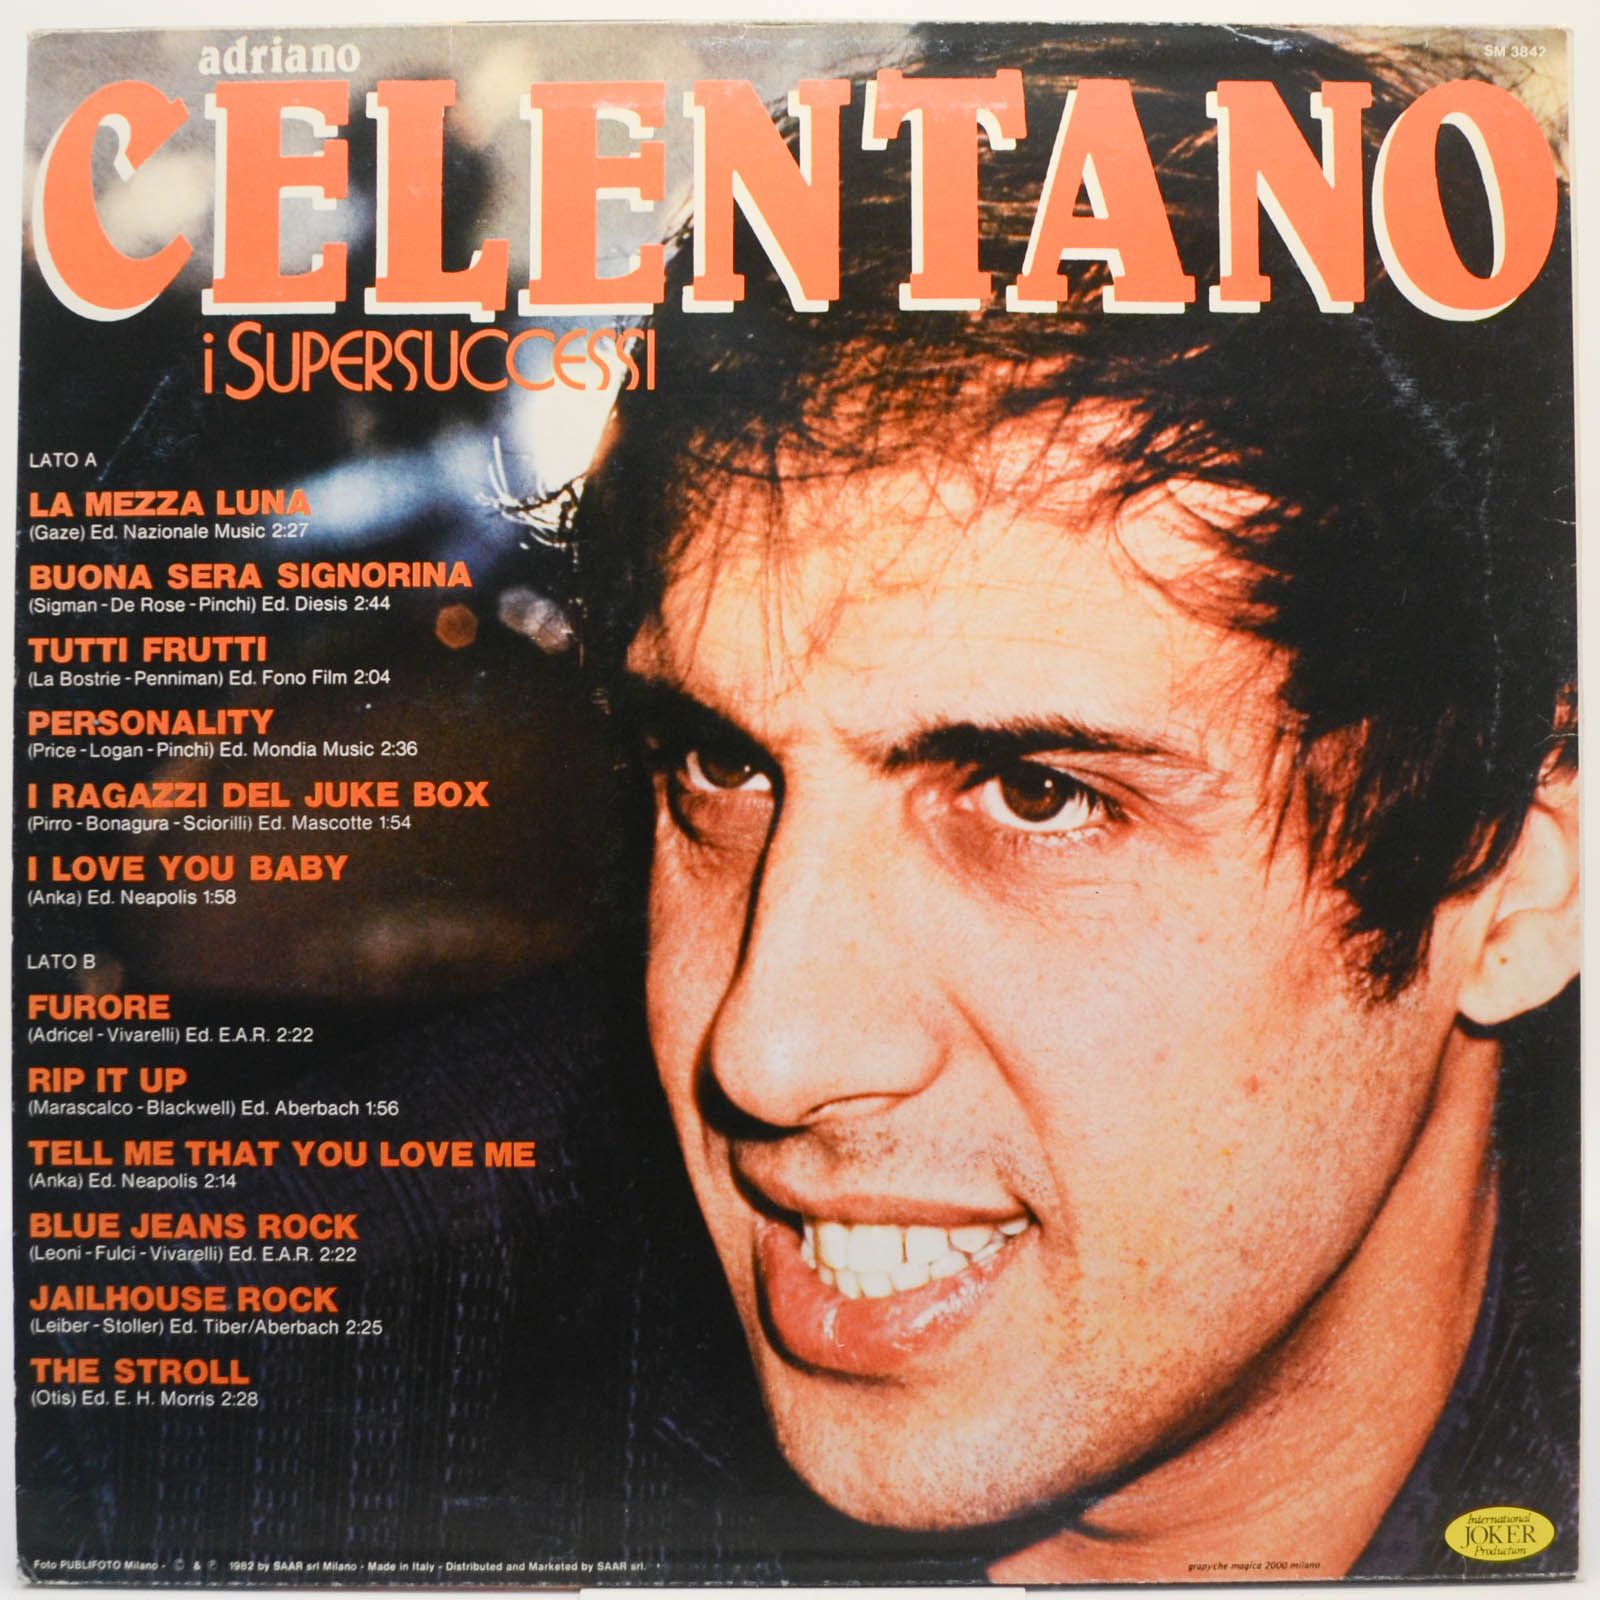 Adriano Celentano — I Supersuccessi (Italy), 1974